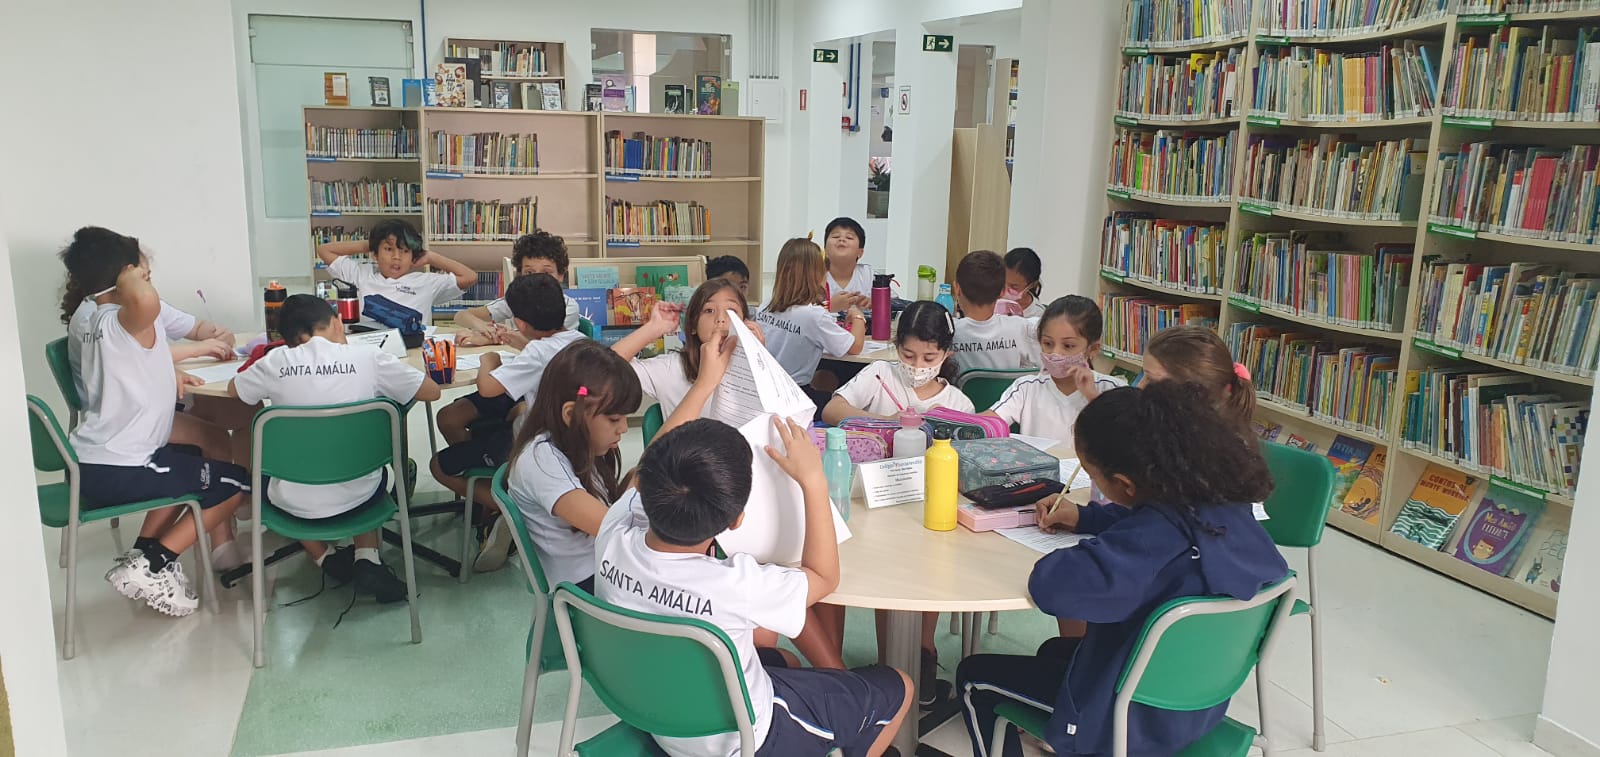 Projeto Leitor em prática no Colégio Santa Amália Saúde estimula benefícios da leitura